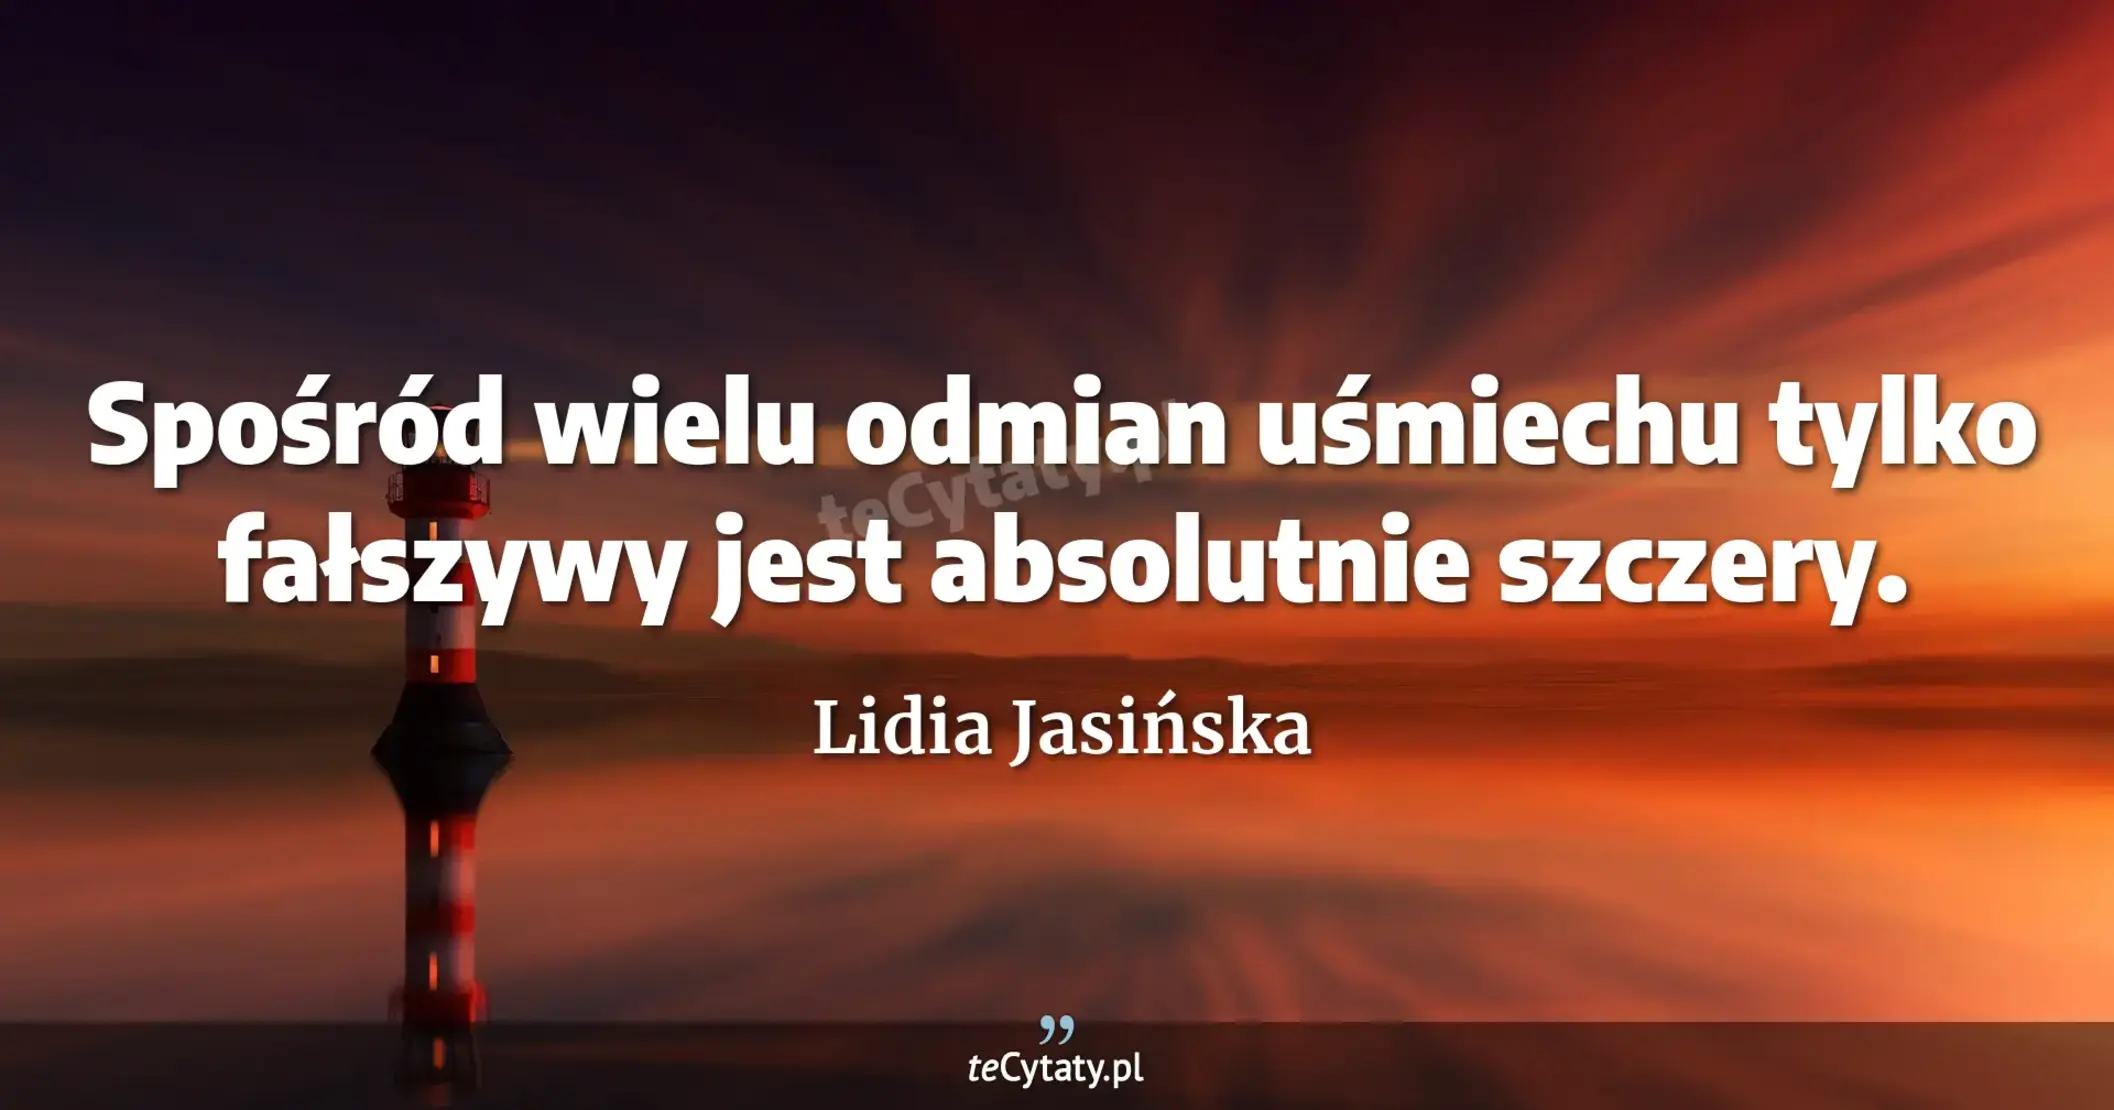 Spośród wielu odmian uśmiechu tylko fałszywy jest absolutnie szczery. - Lidia Jasińska